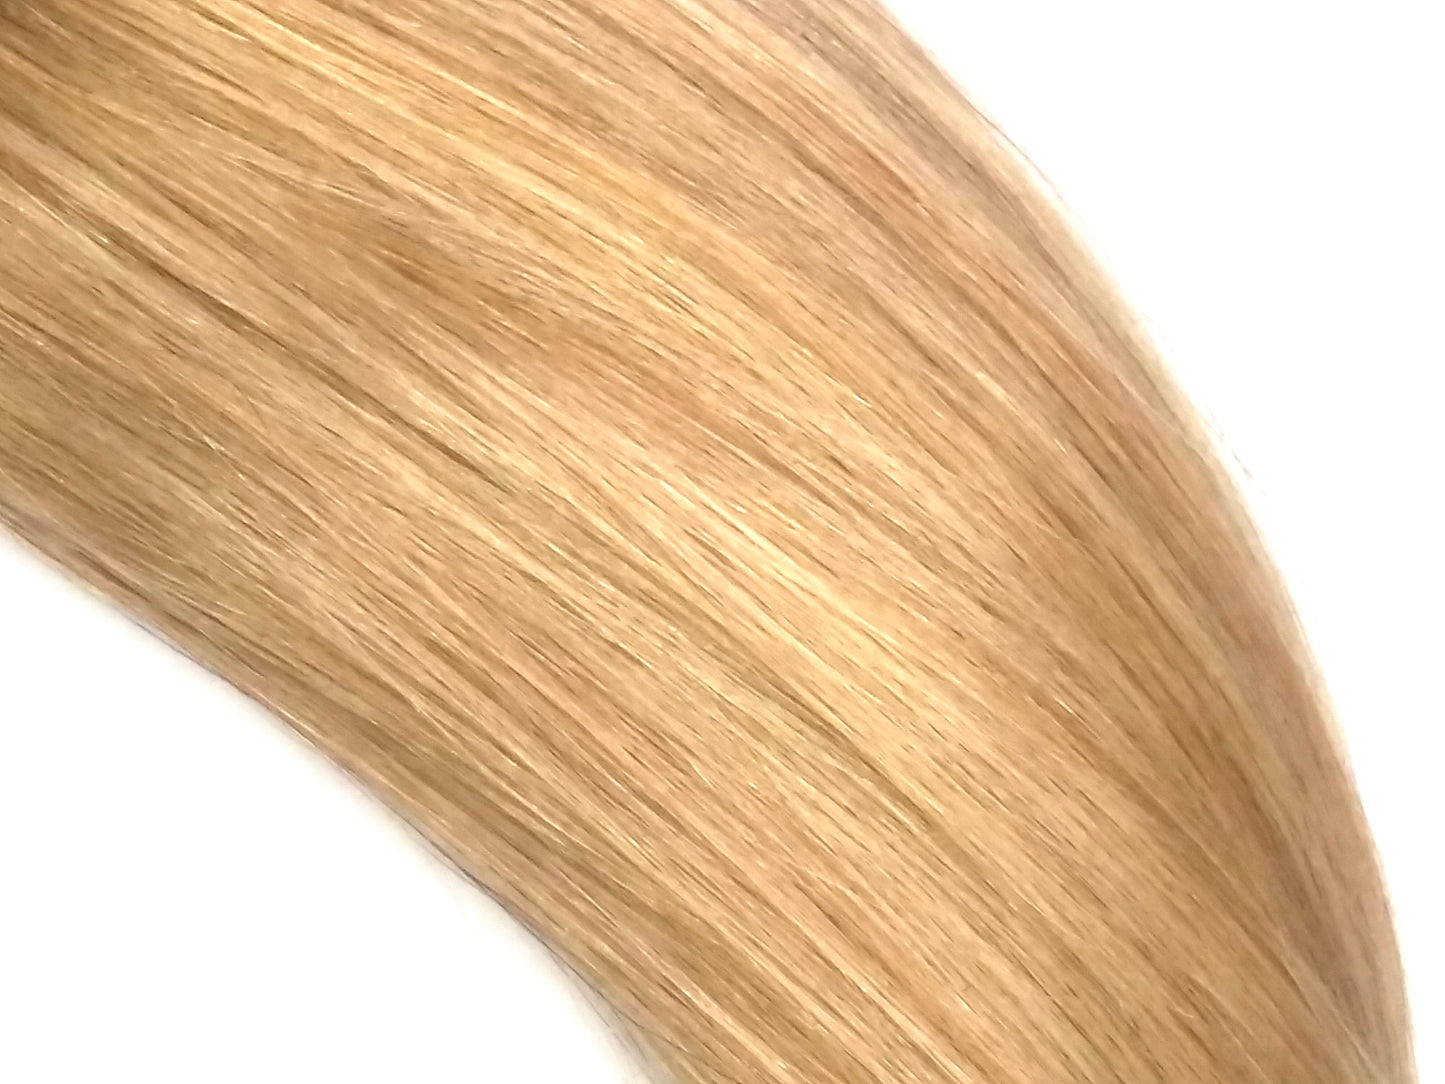 שיער אנושי רמי רוסי, 1 גרם i-Tips, ישר, 20 אינץ', צבע 18, 50 גרם, משלוח מהיר!